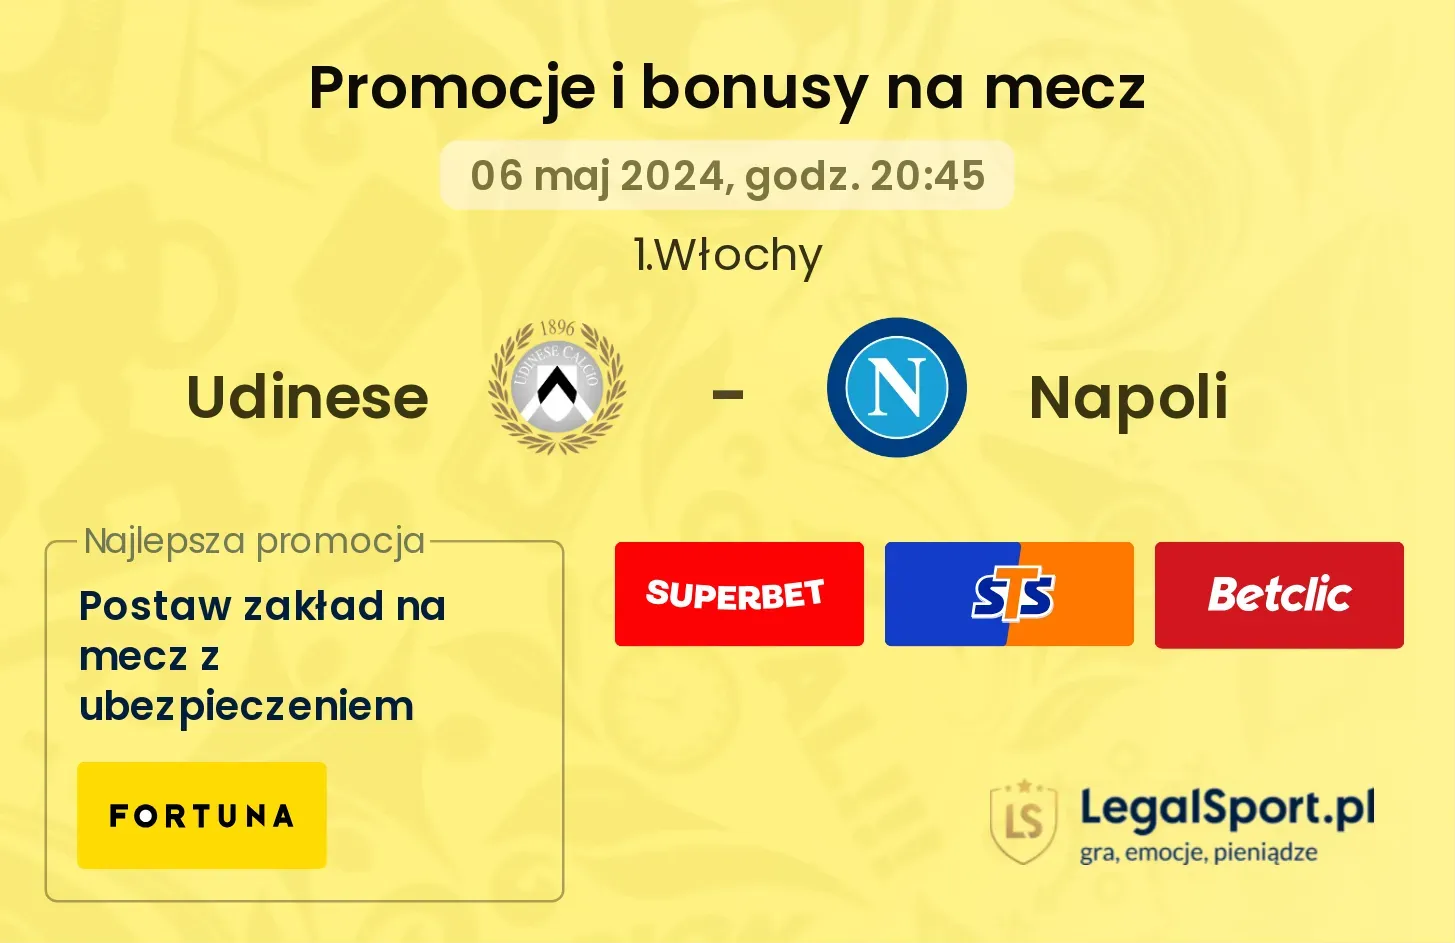 Udinese - Napoli promocje bonusy na mecz